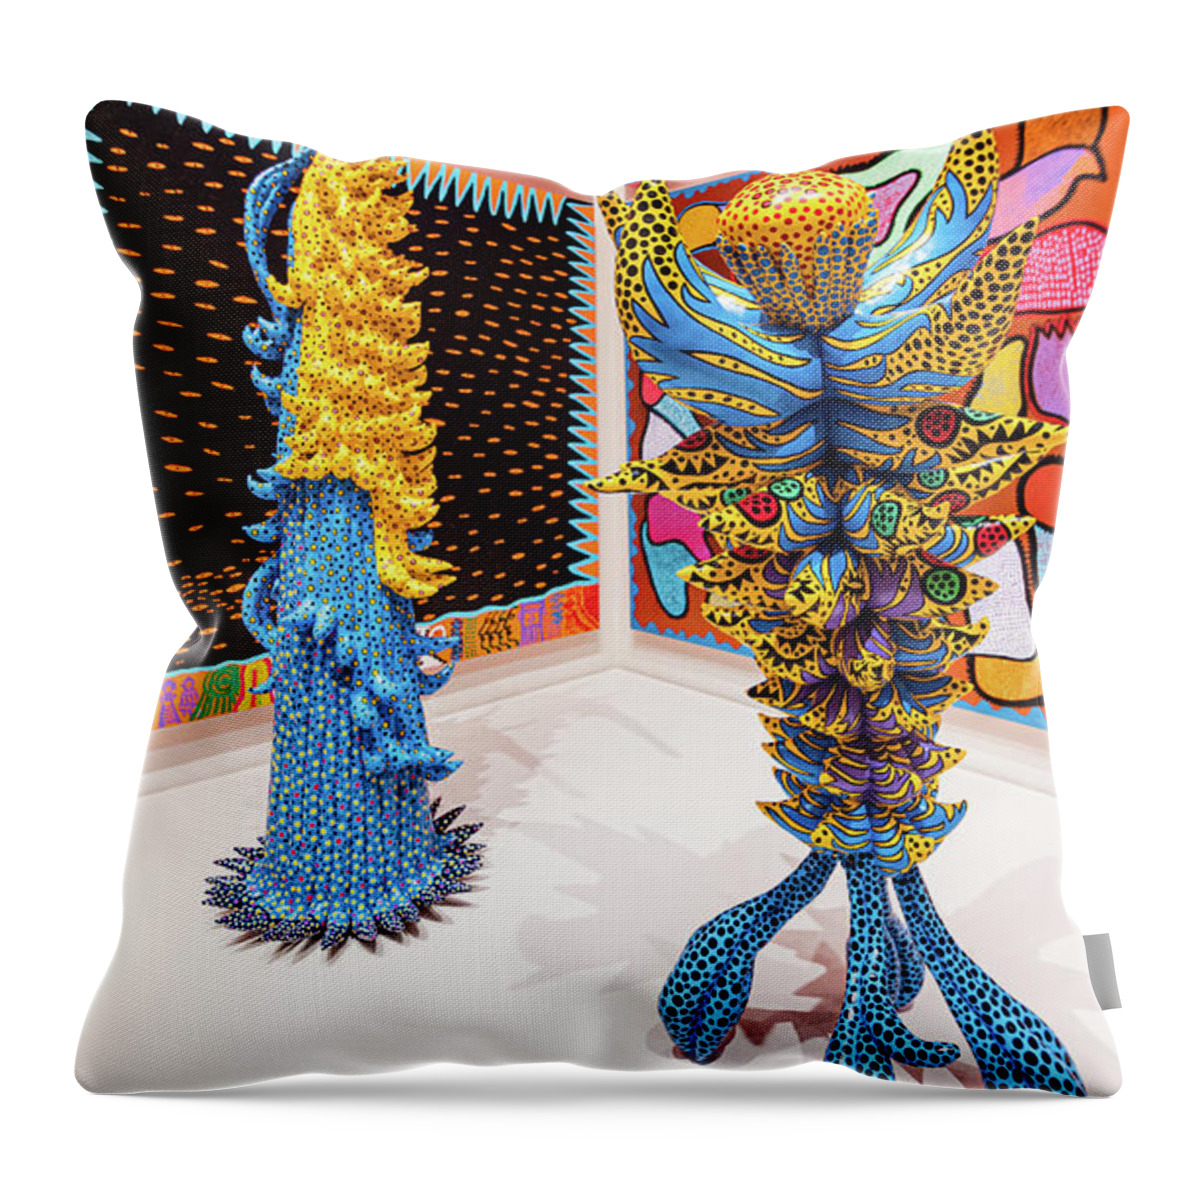 Art Throw Pillow featuring the photograph Modern Art by Stewart Helberg